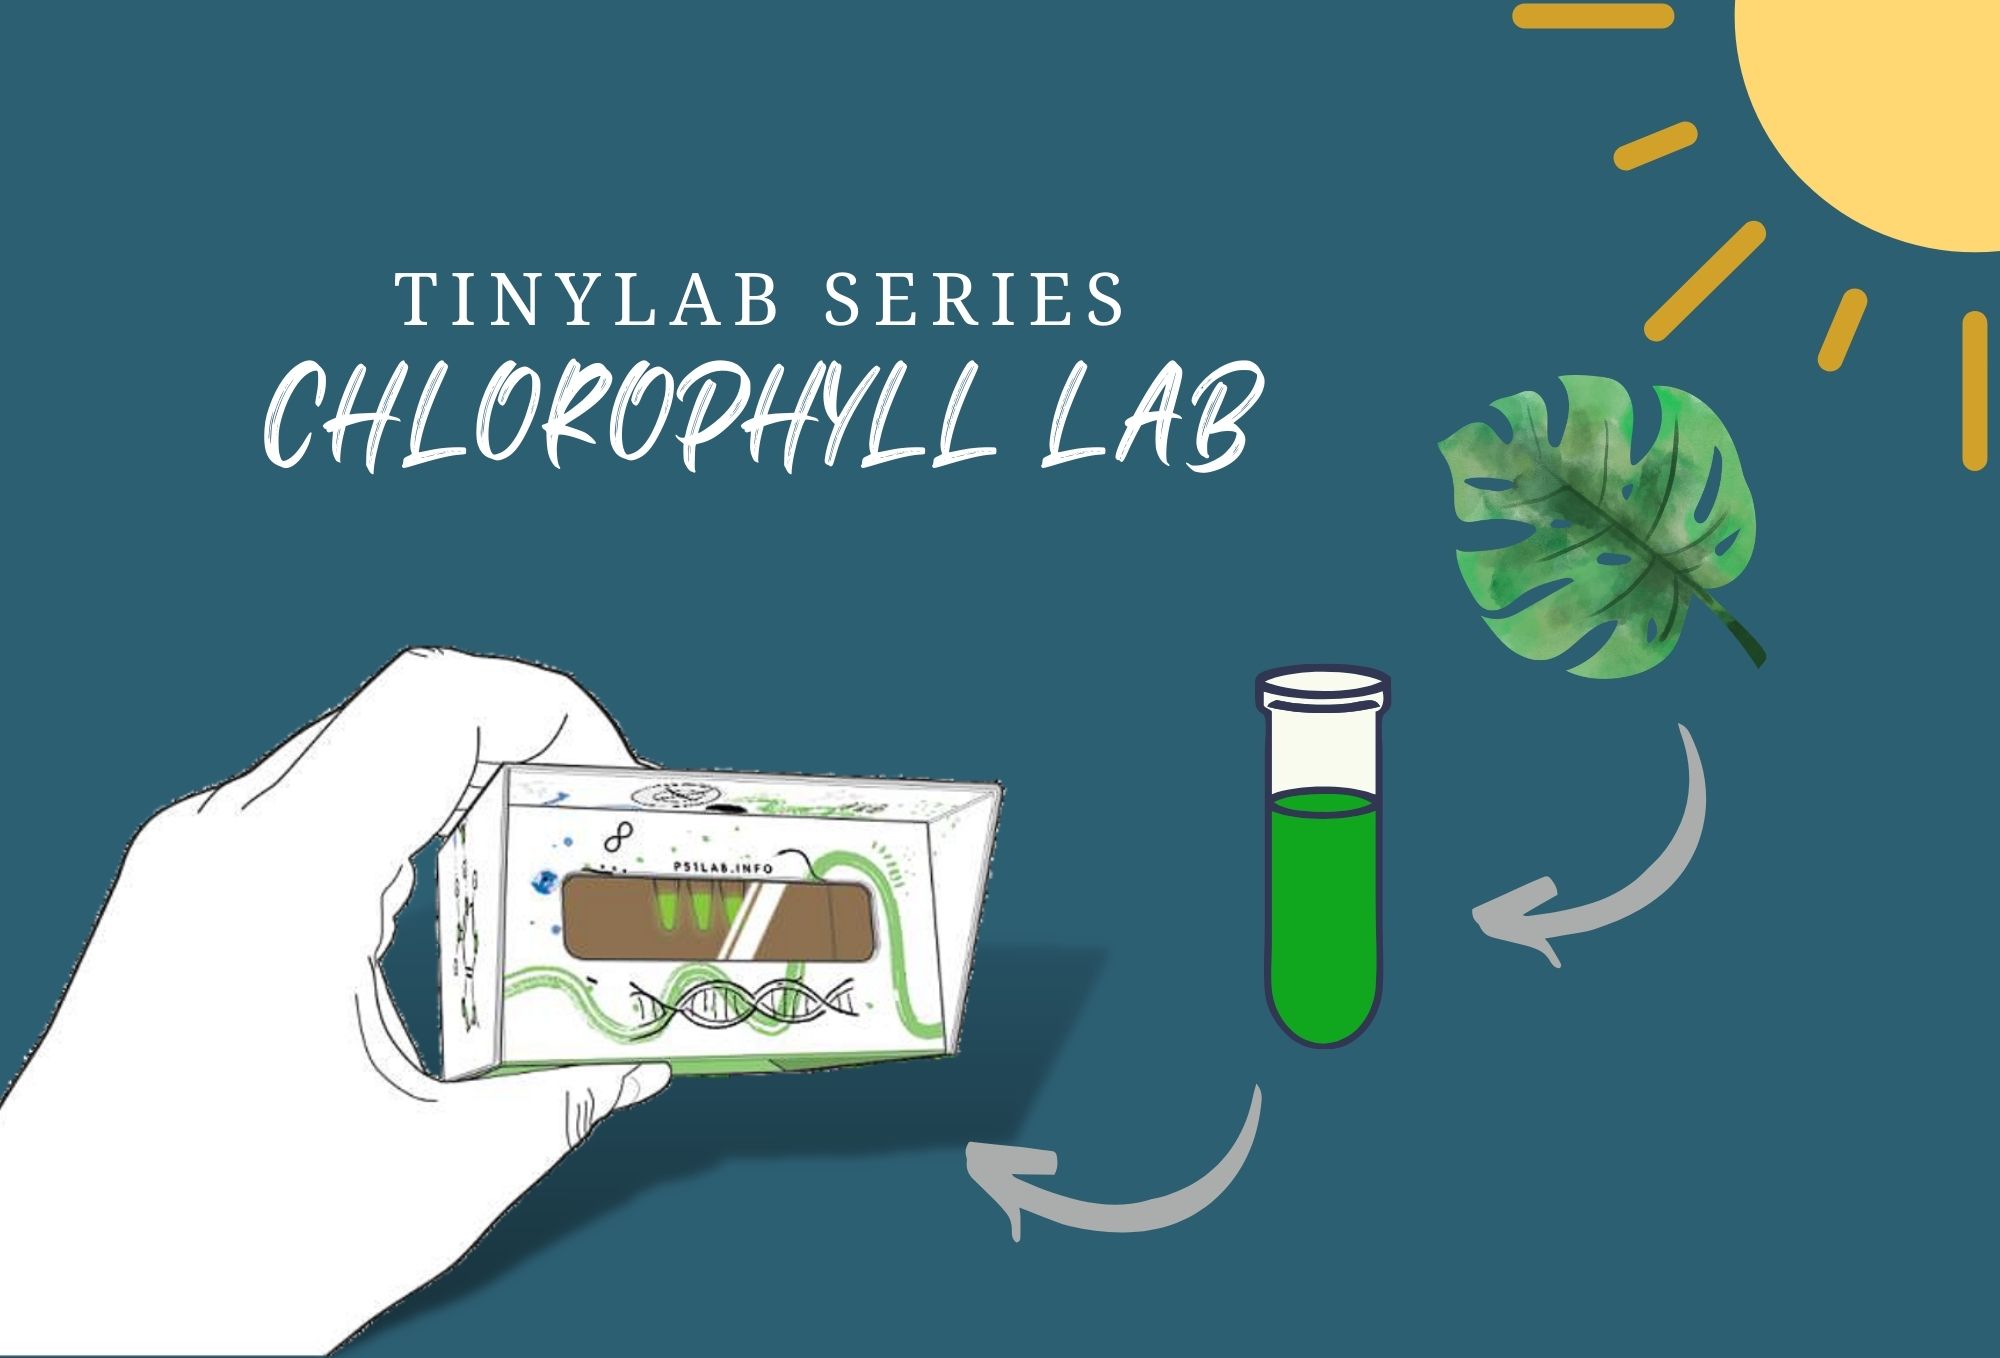 Chlorophyll lab website image